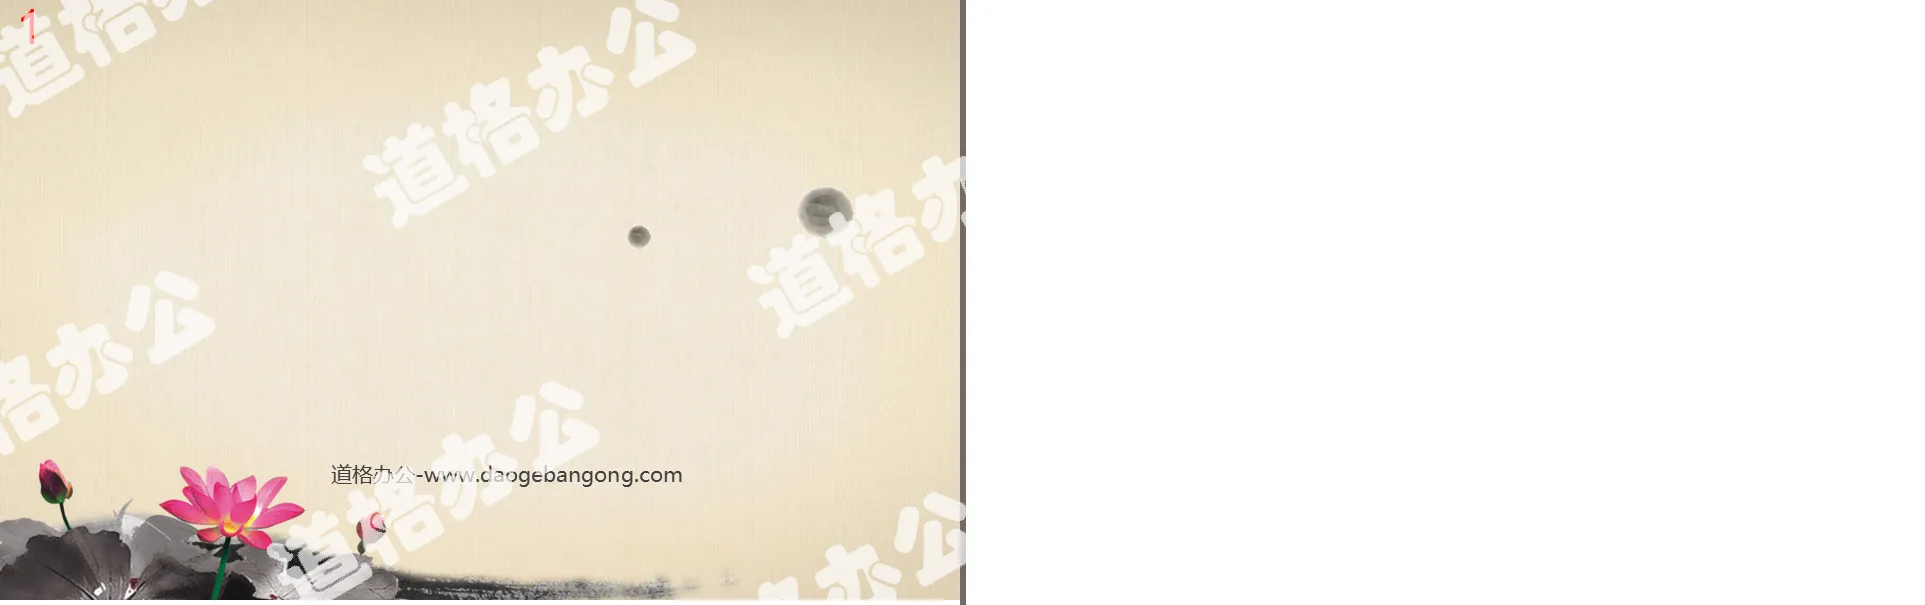 蓮花背景的古典中國風幻燈片背景圖片